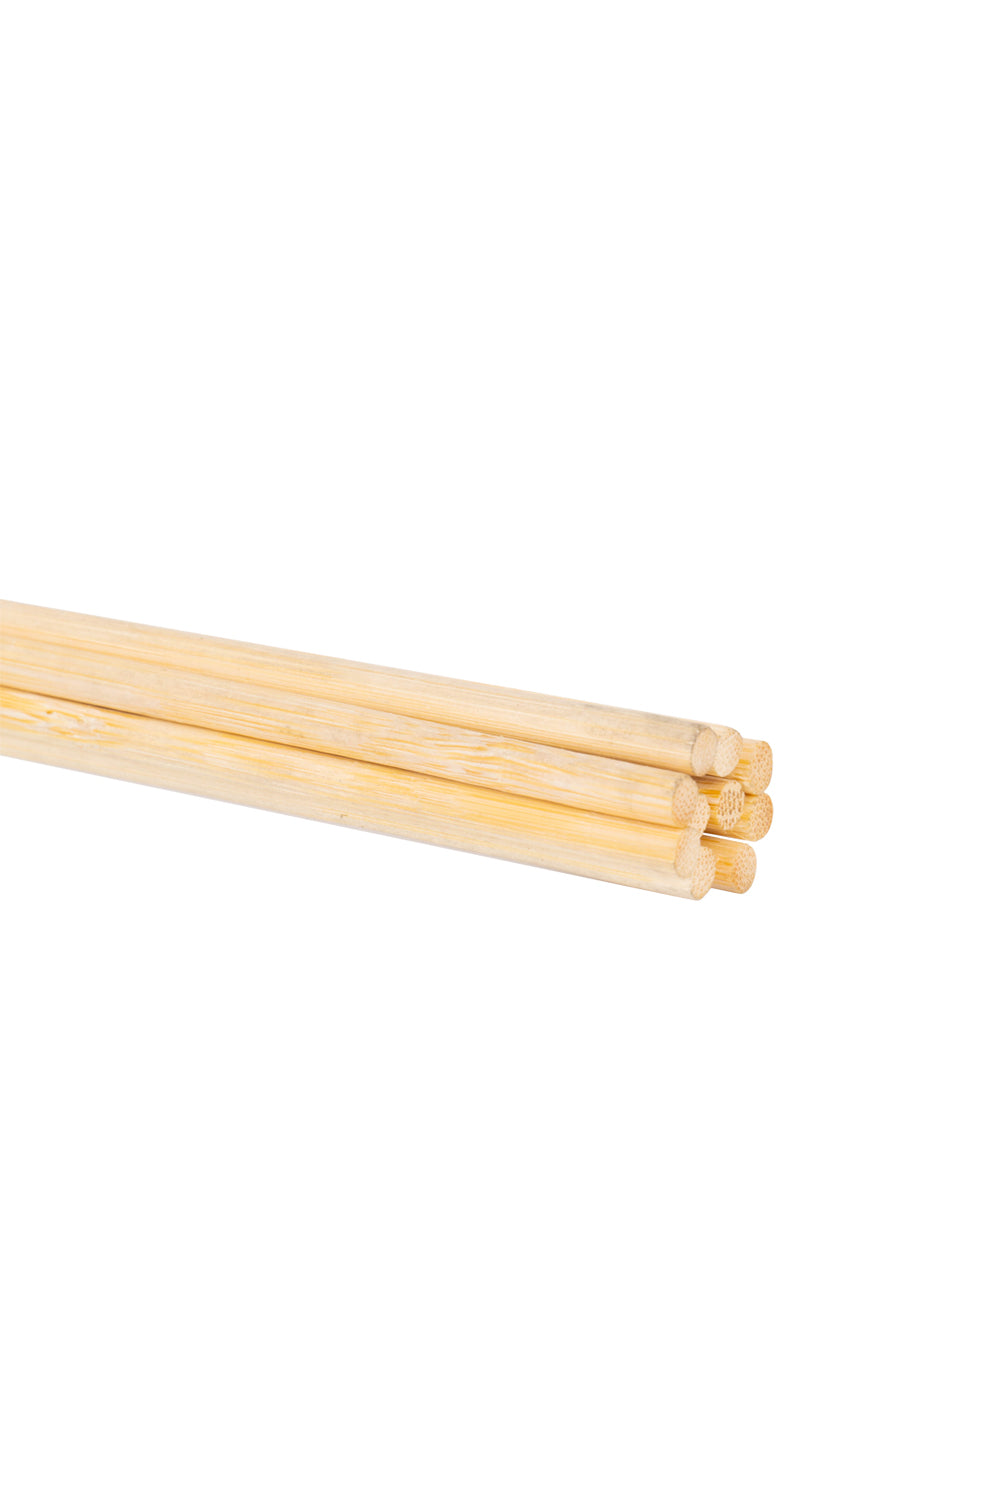 Bamboo cane, Spanking bundle canes